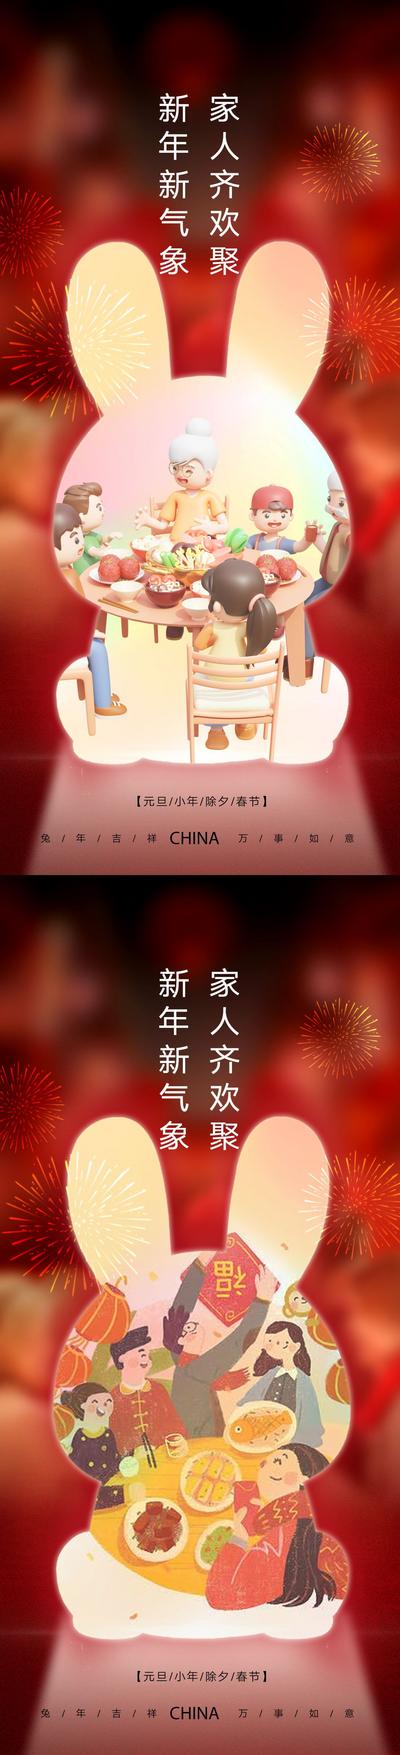 南门网 海报 公历节日 中国传统节日  元旦 兔年 春节 小年 新年  兔子 舞狮 剪纸 插画 系列